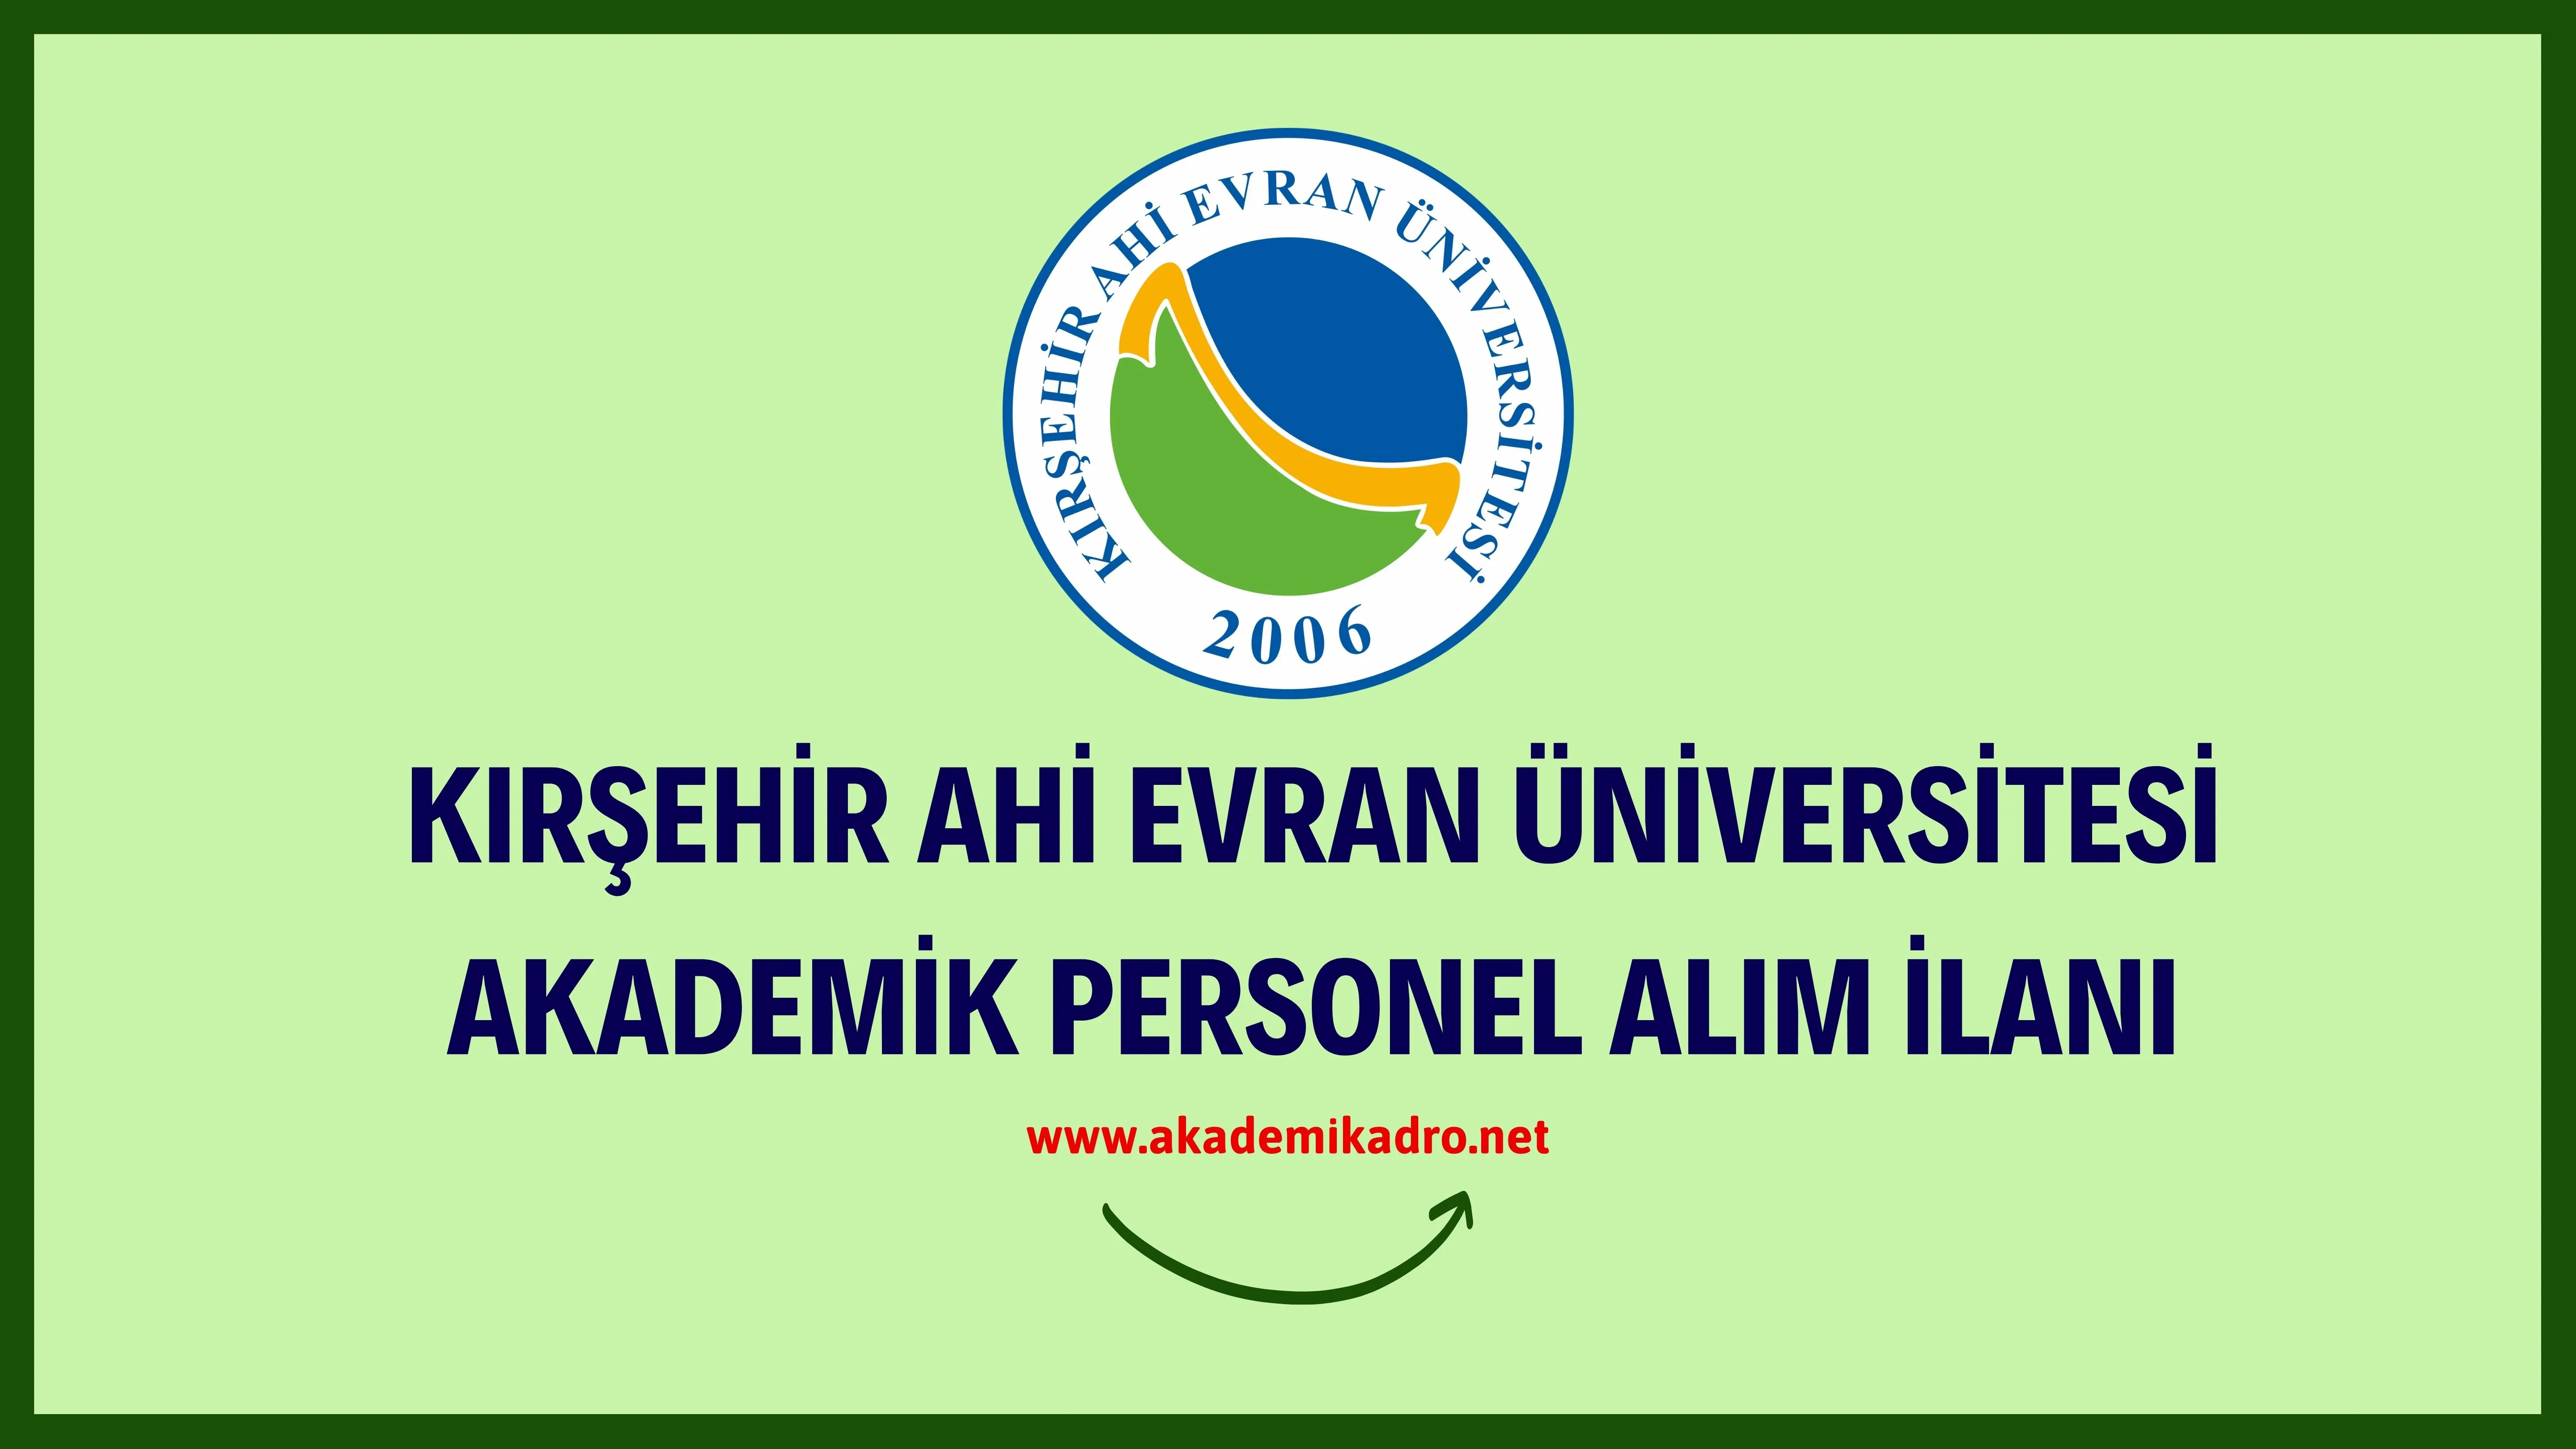 Kırşehir Ahi Evran Üniversitesi birçok alandan 51 akademik personel alacak.